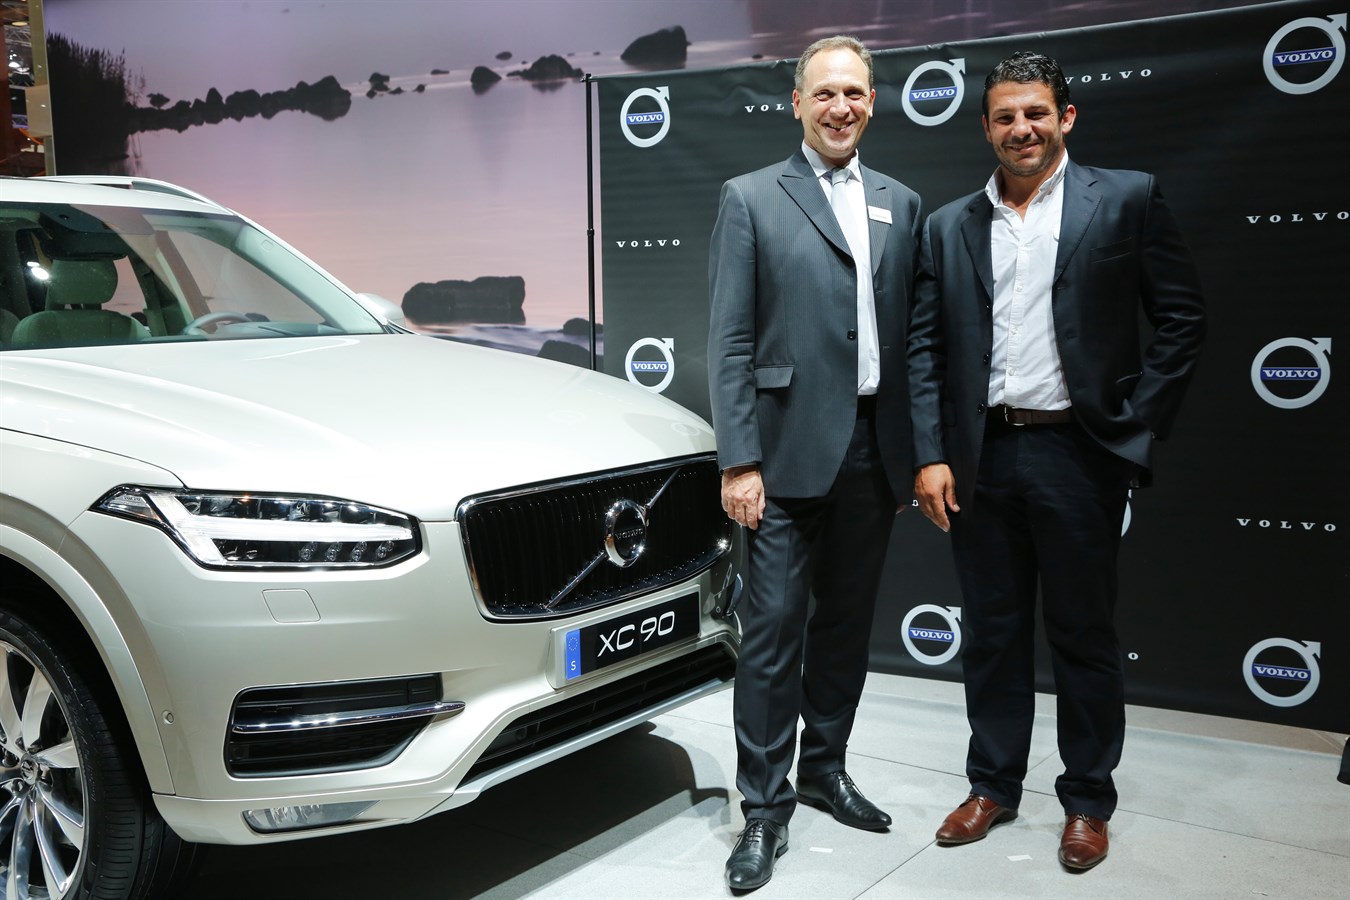 Volvo XC90 - Mondial de l'Automobile 2014 soirée VIP Yves Pasquier-Desvignes & Benoit August